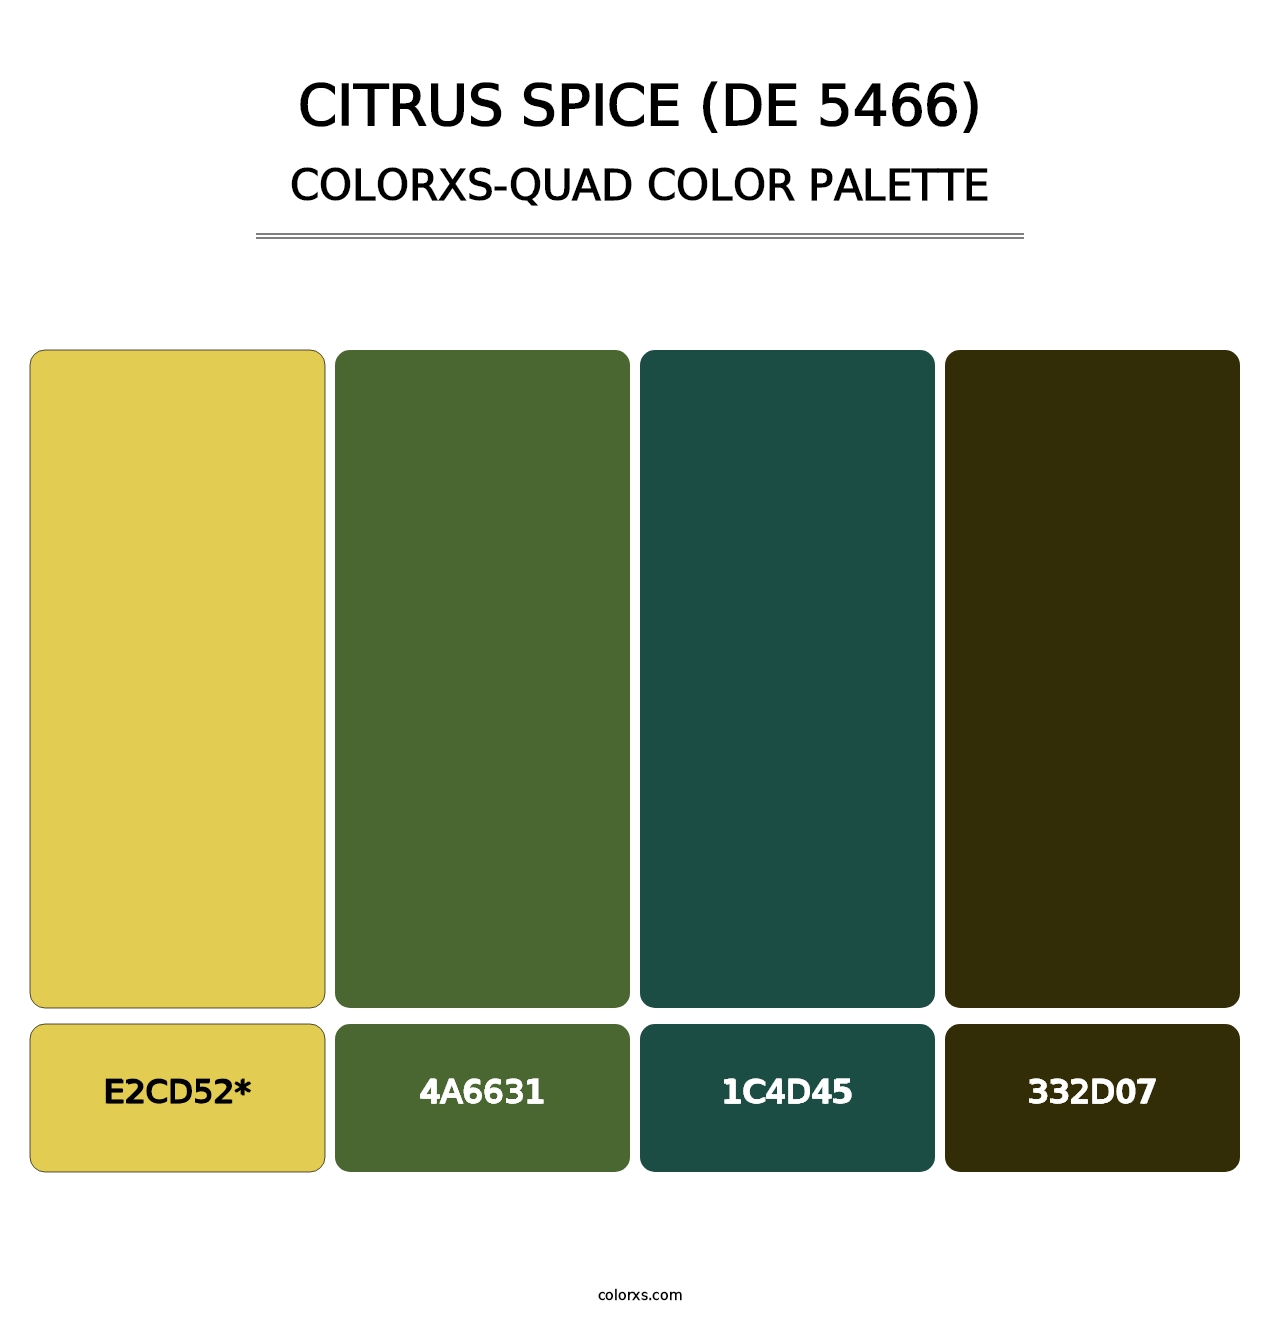 Citrus Spice (DE 5466) - Colorxs Quad Palette